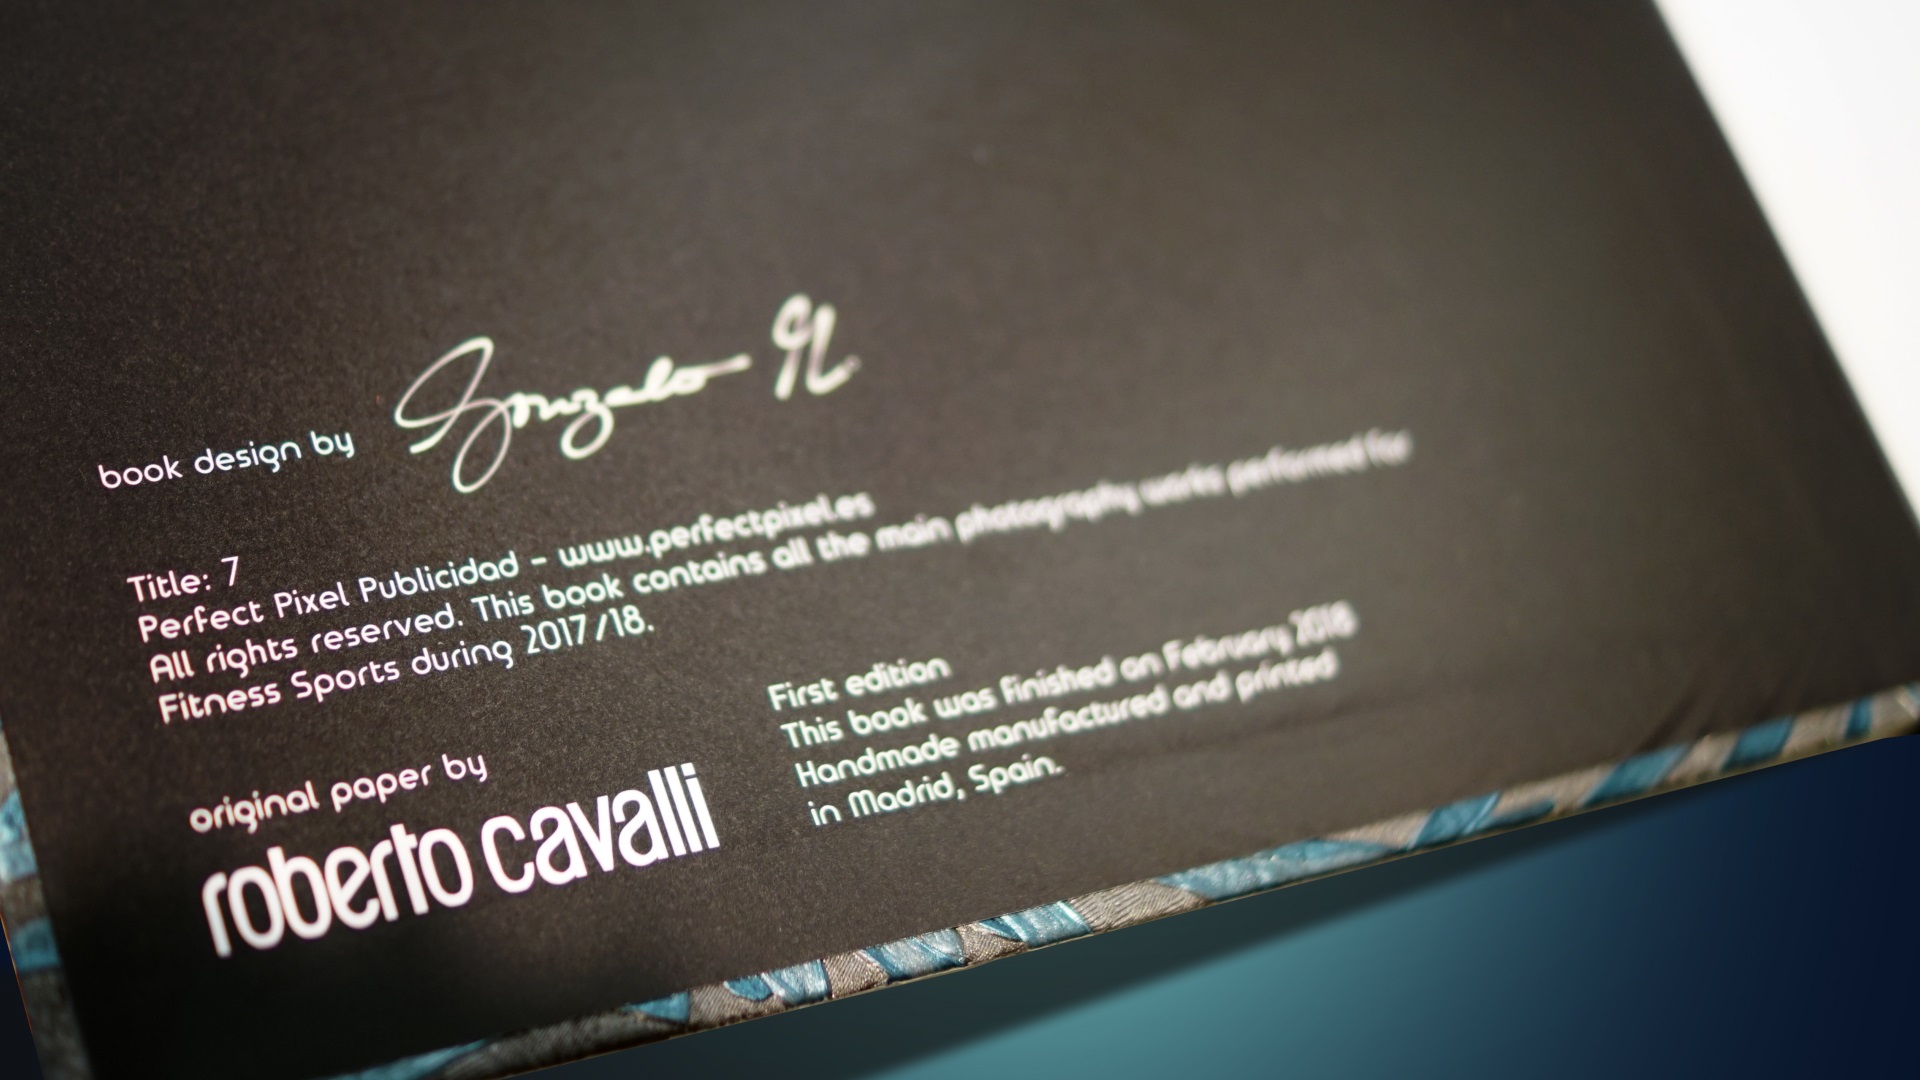 Roberto Cavalli Book Fitness Sports Valle las Cañas 7 Perfect Pixel Publicidad